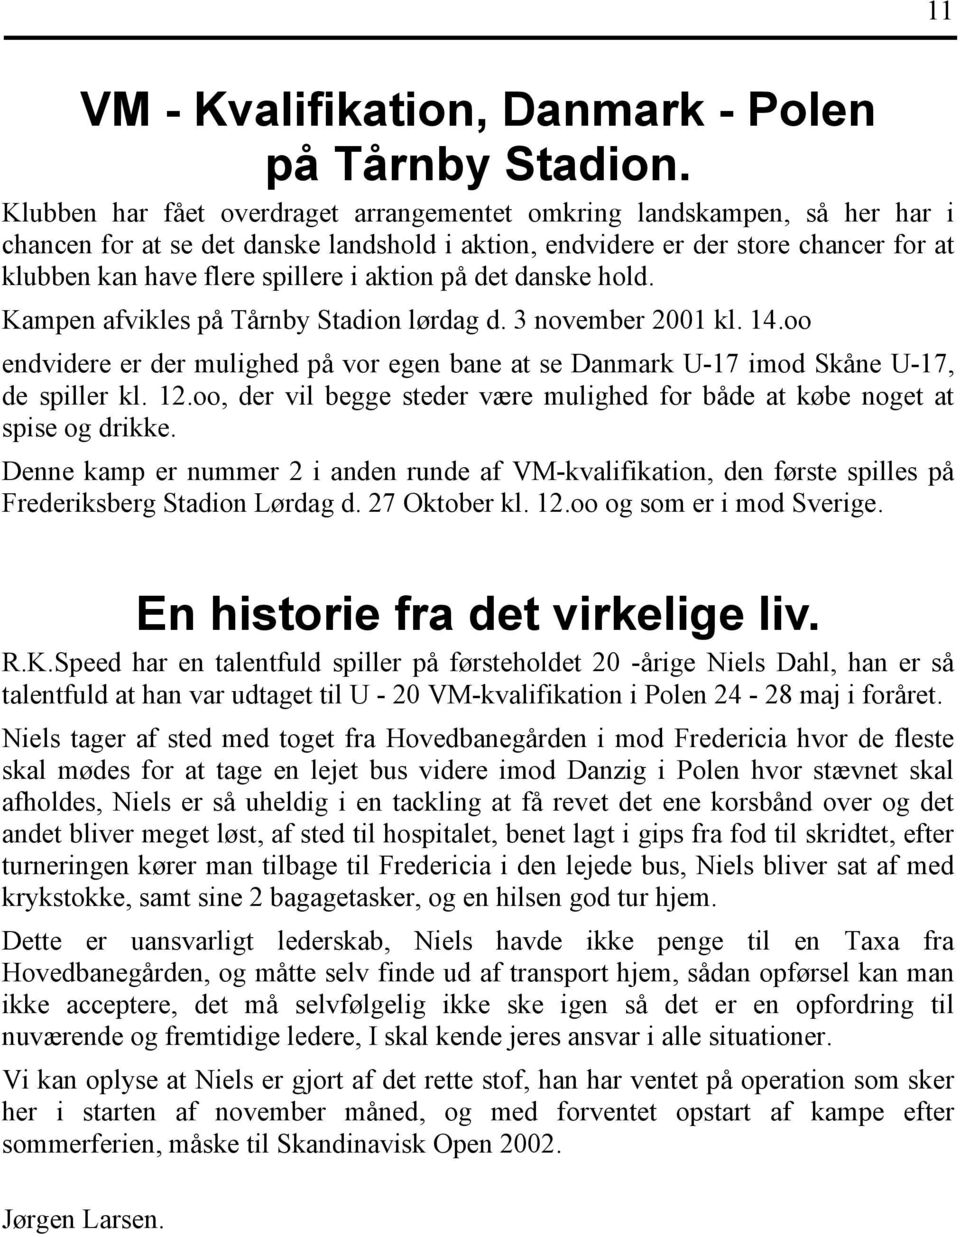 aktion på det danske hold. Kampen afvikles på Tårnby Stadion lørdag d. 3 november 2001 kl. 14.oo endvidere er der mulighed på vor egen bane at se Danmark U-17 imod Skåne U-17, de spiller kl. 12.